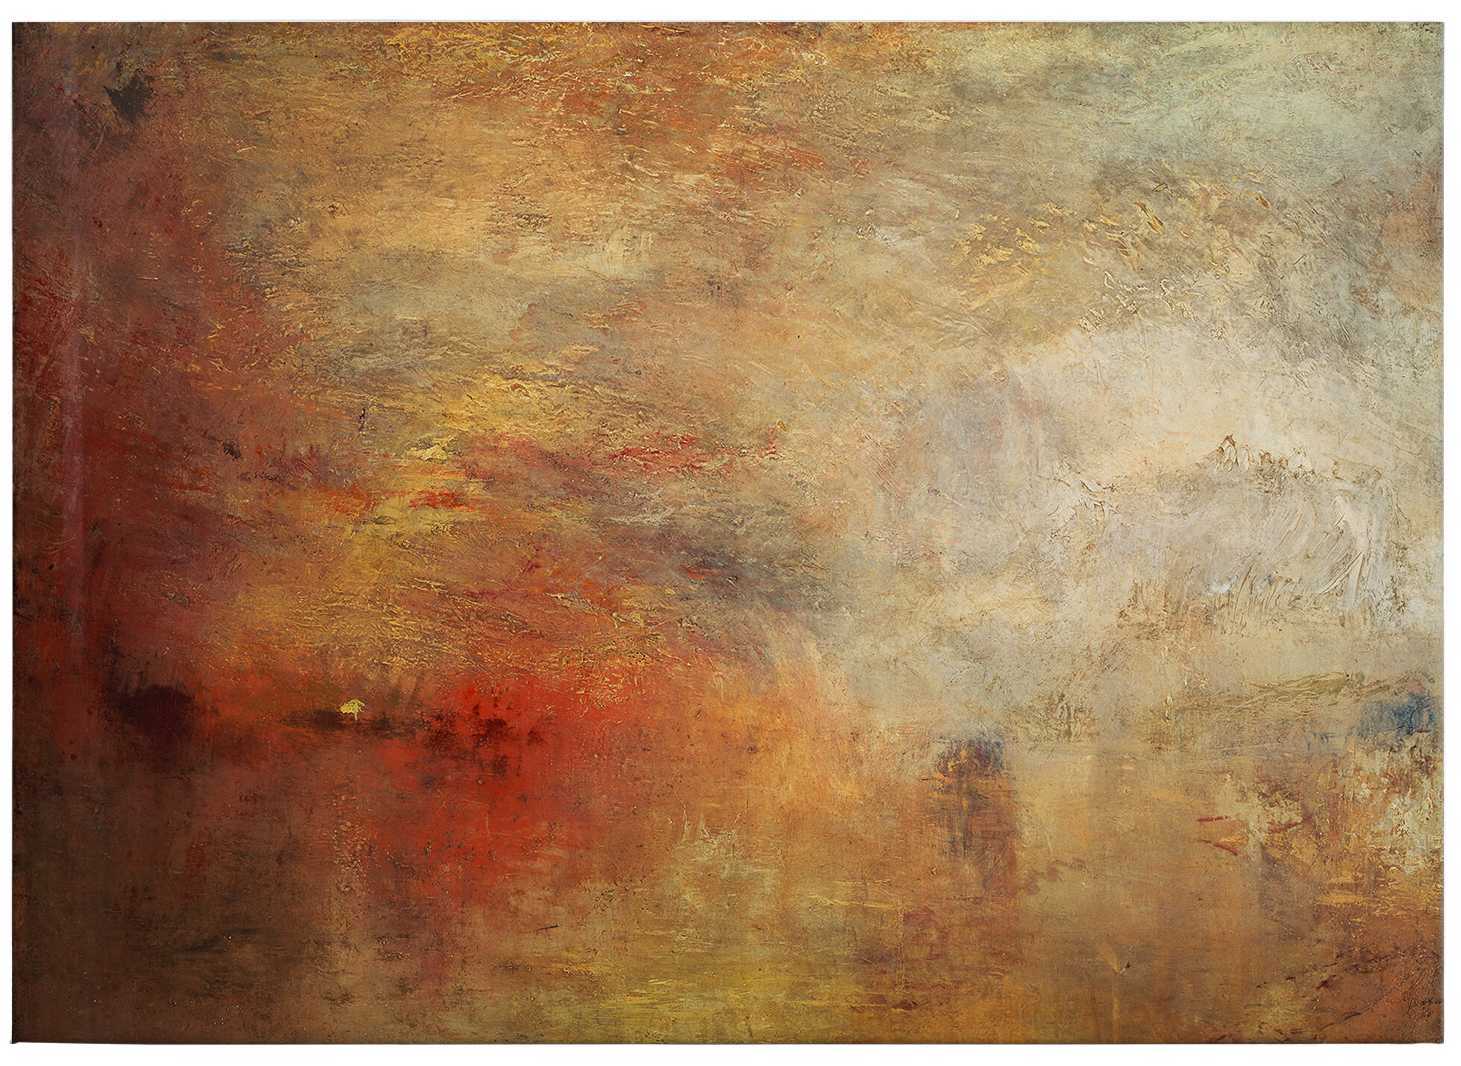             Pittura su tela di Turner "Tramonto sul mare" - 0,70 m x 0,50 m
        